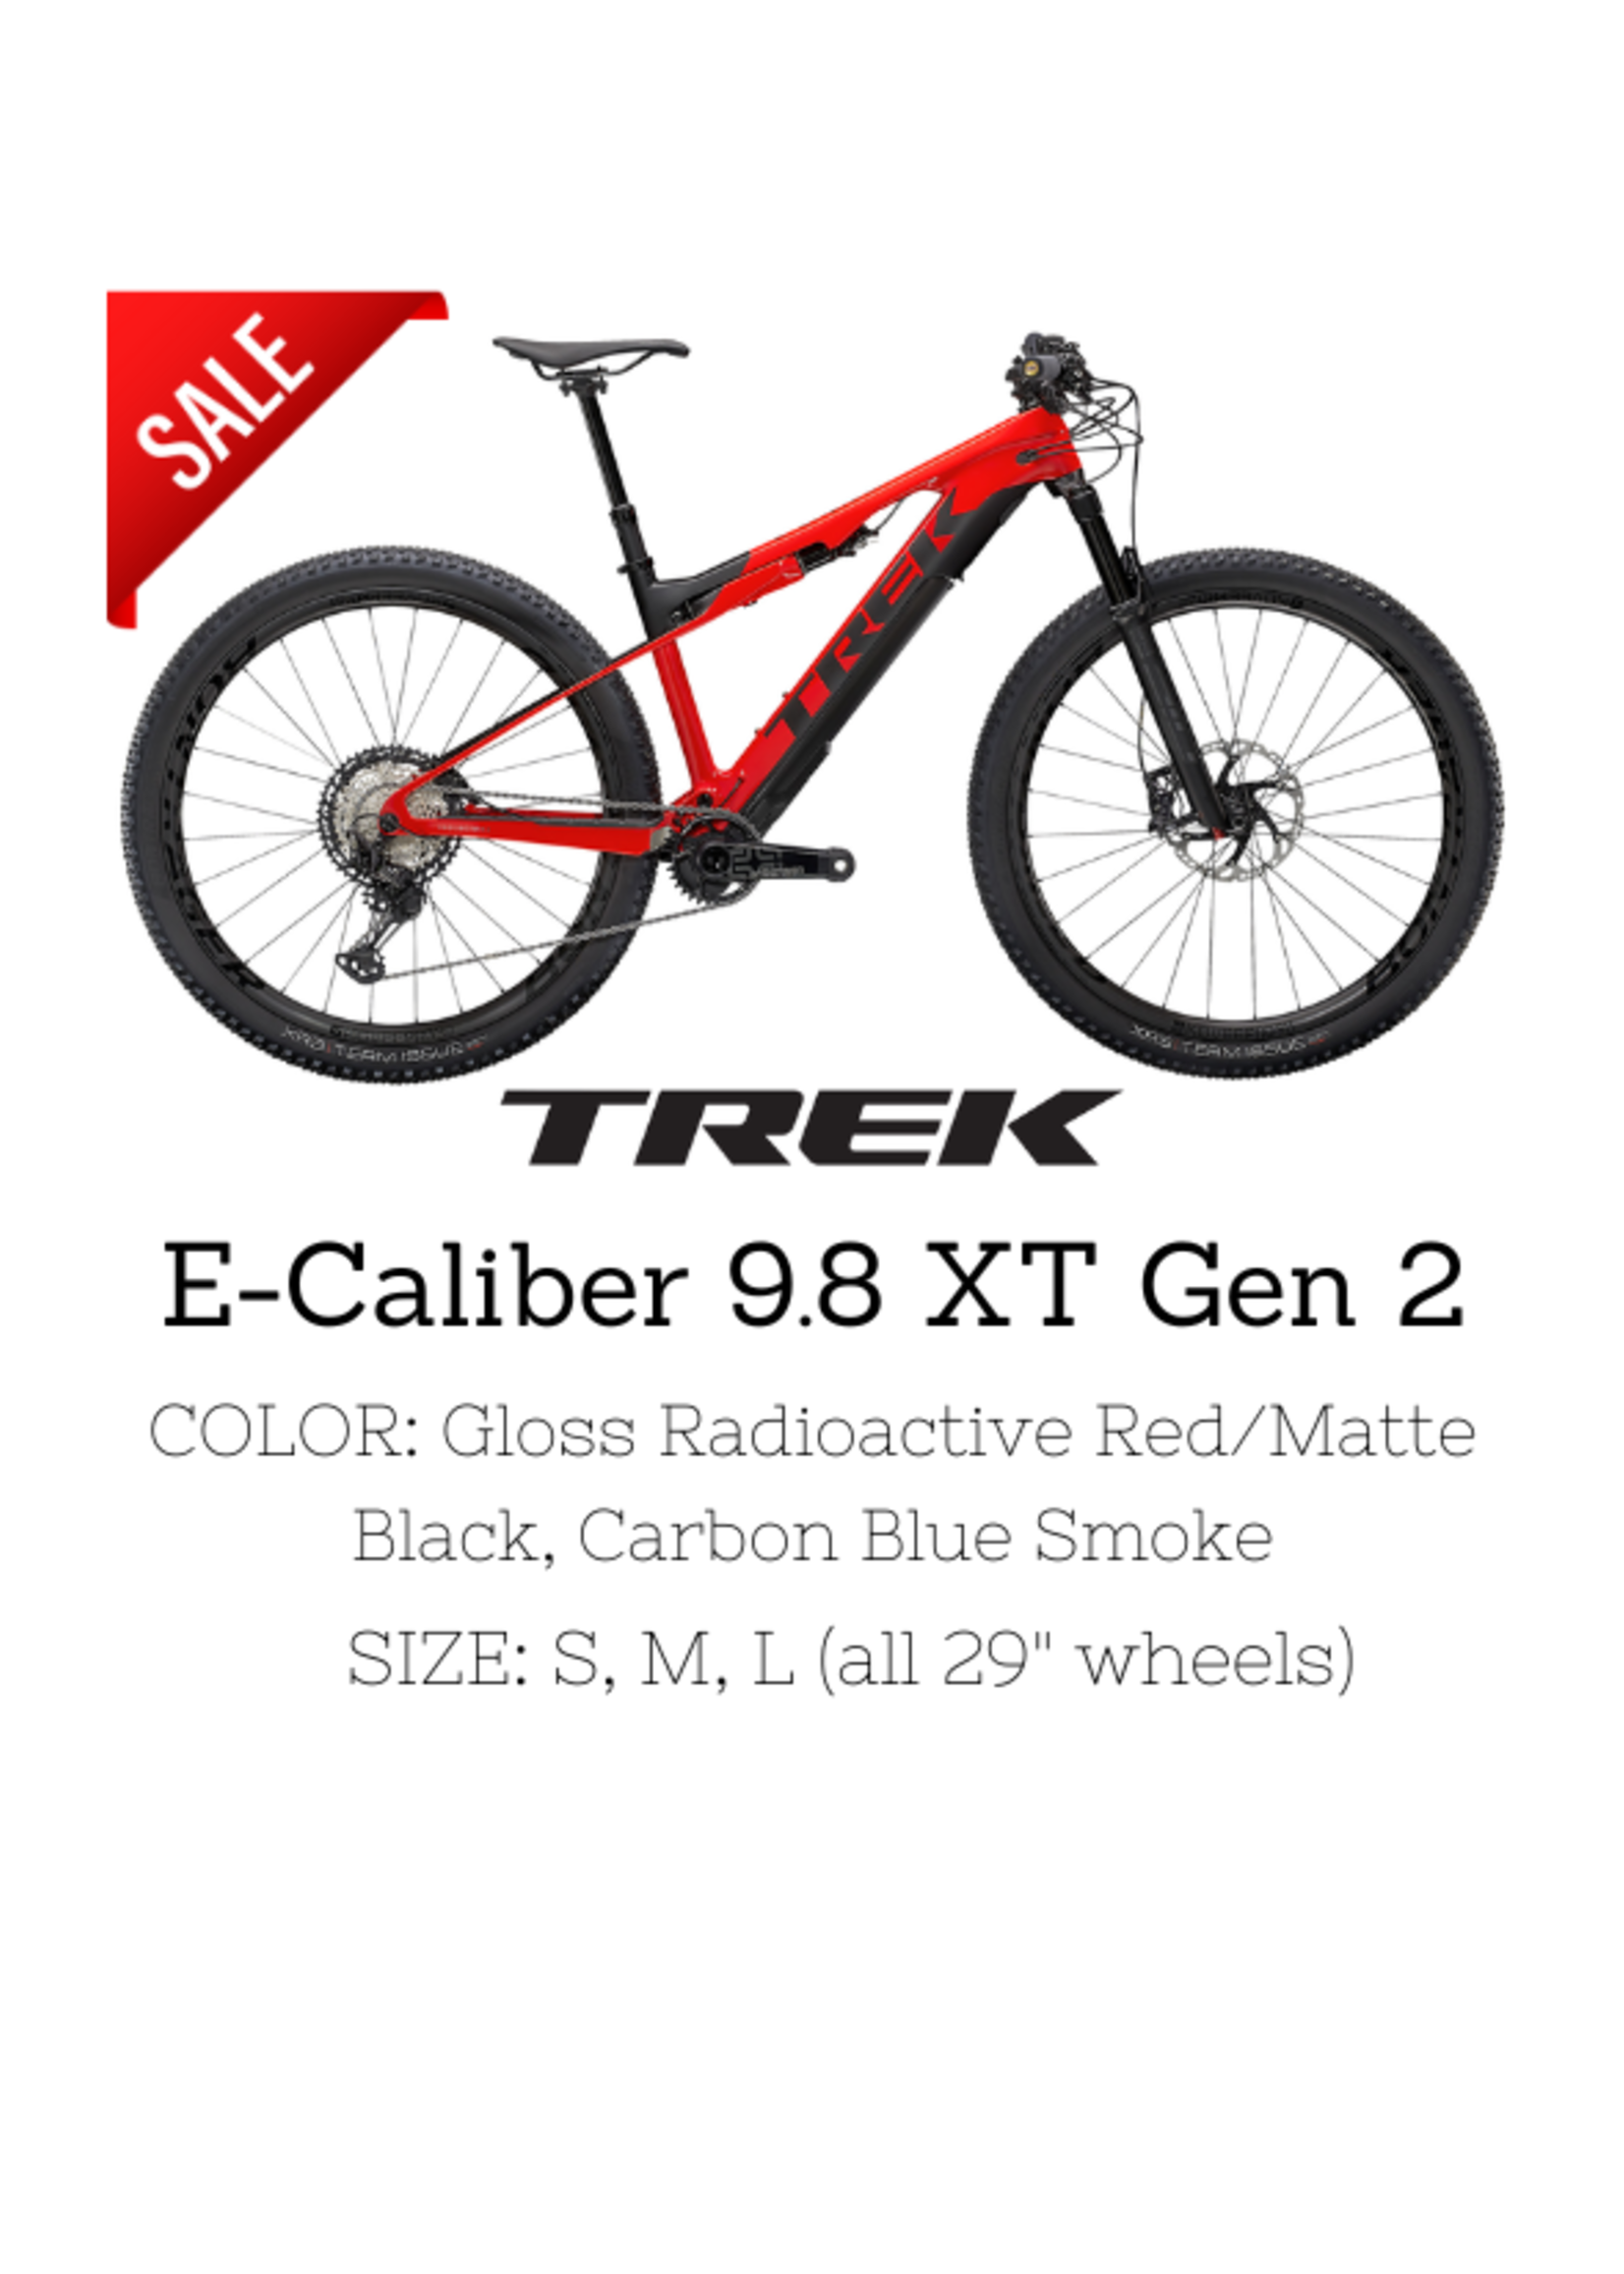 TREK Trek E-Caliber 9.8 XT Gen 2